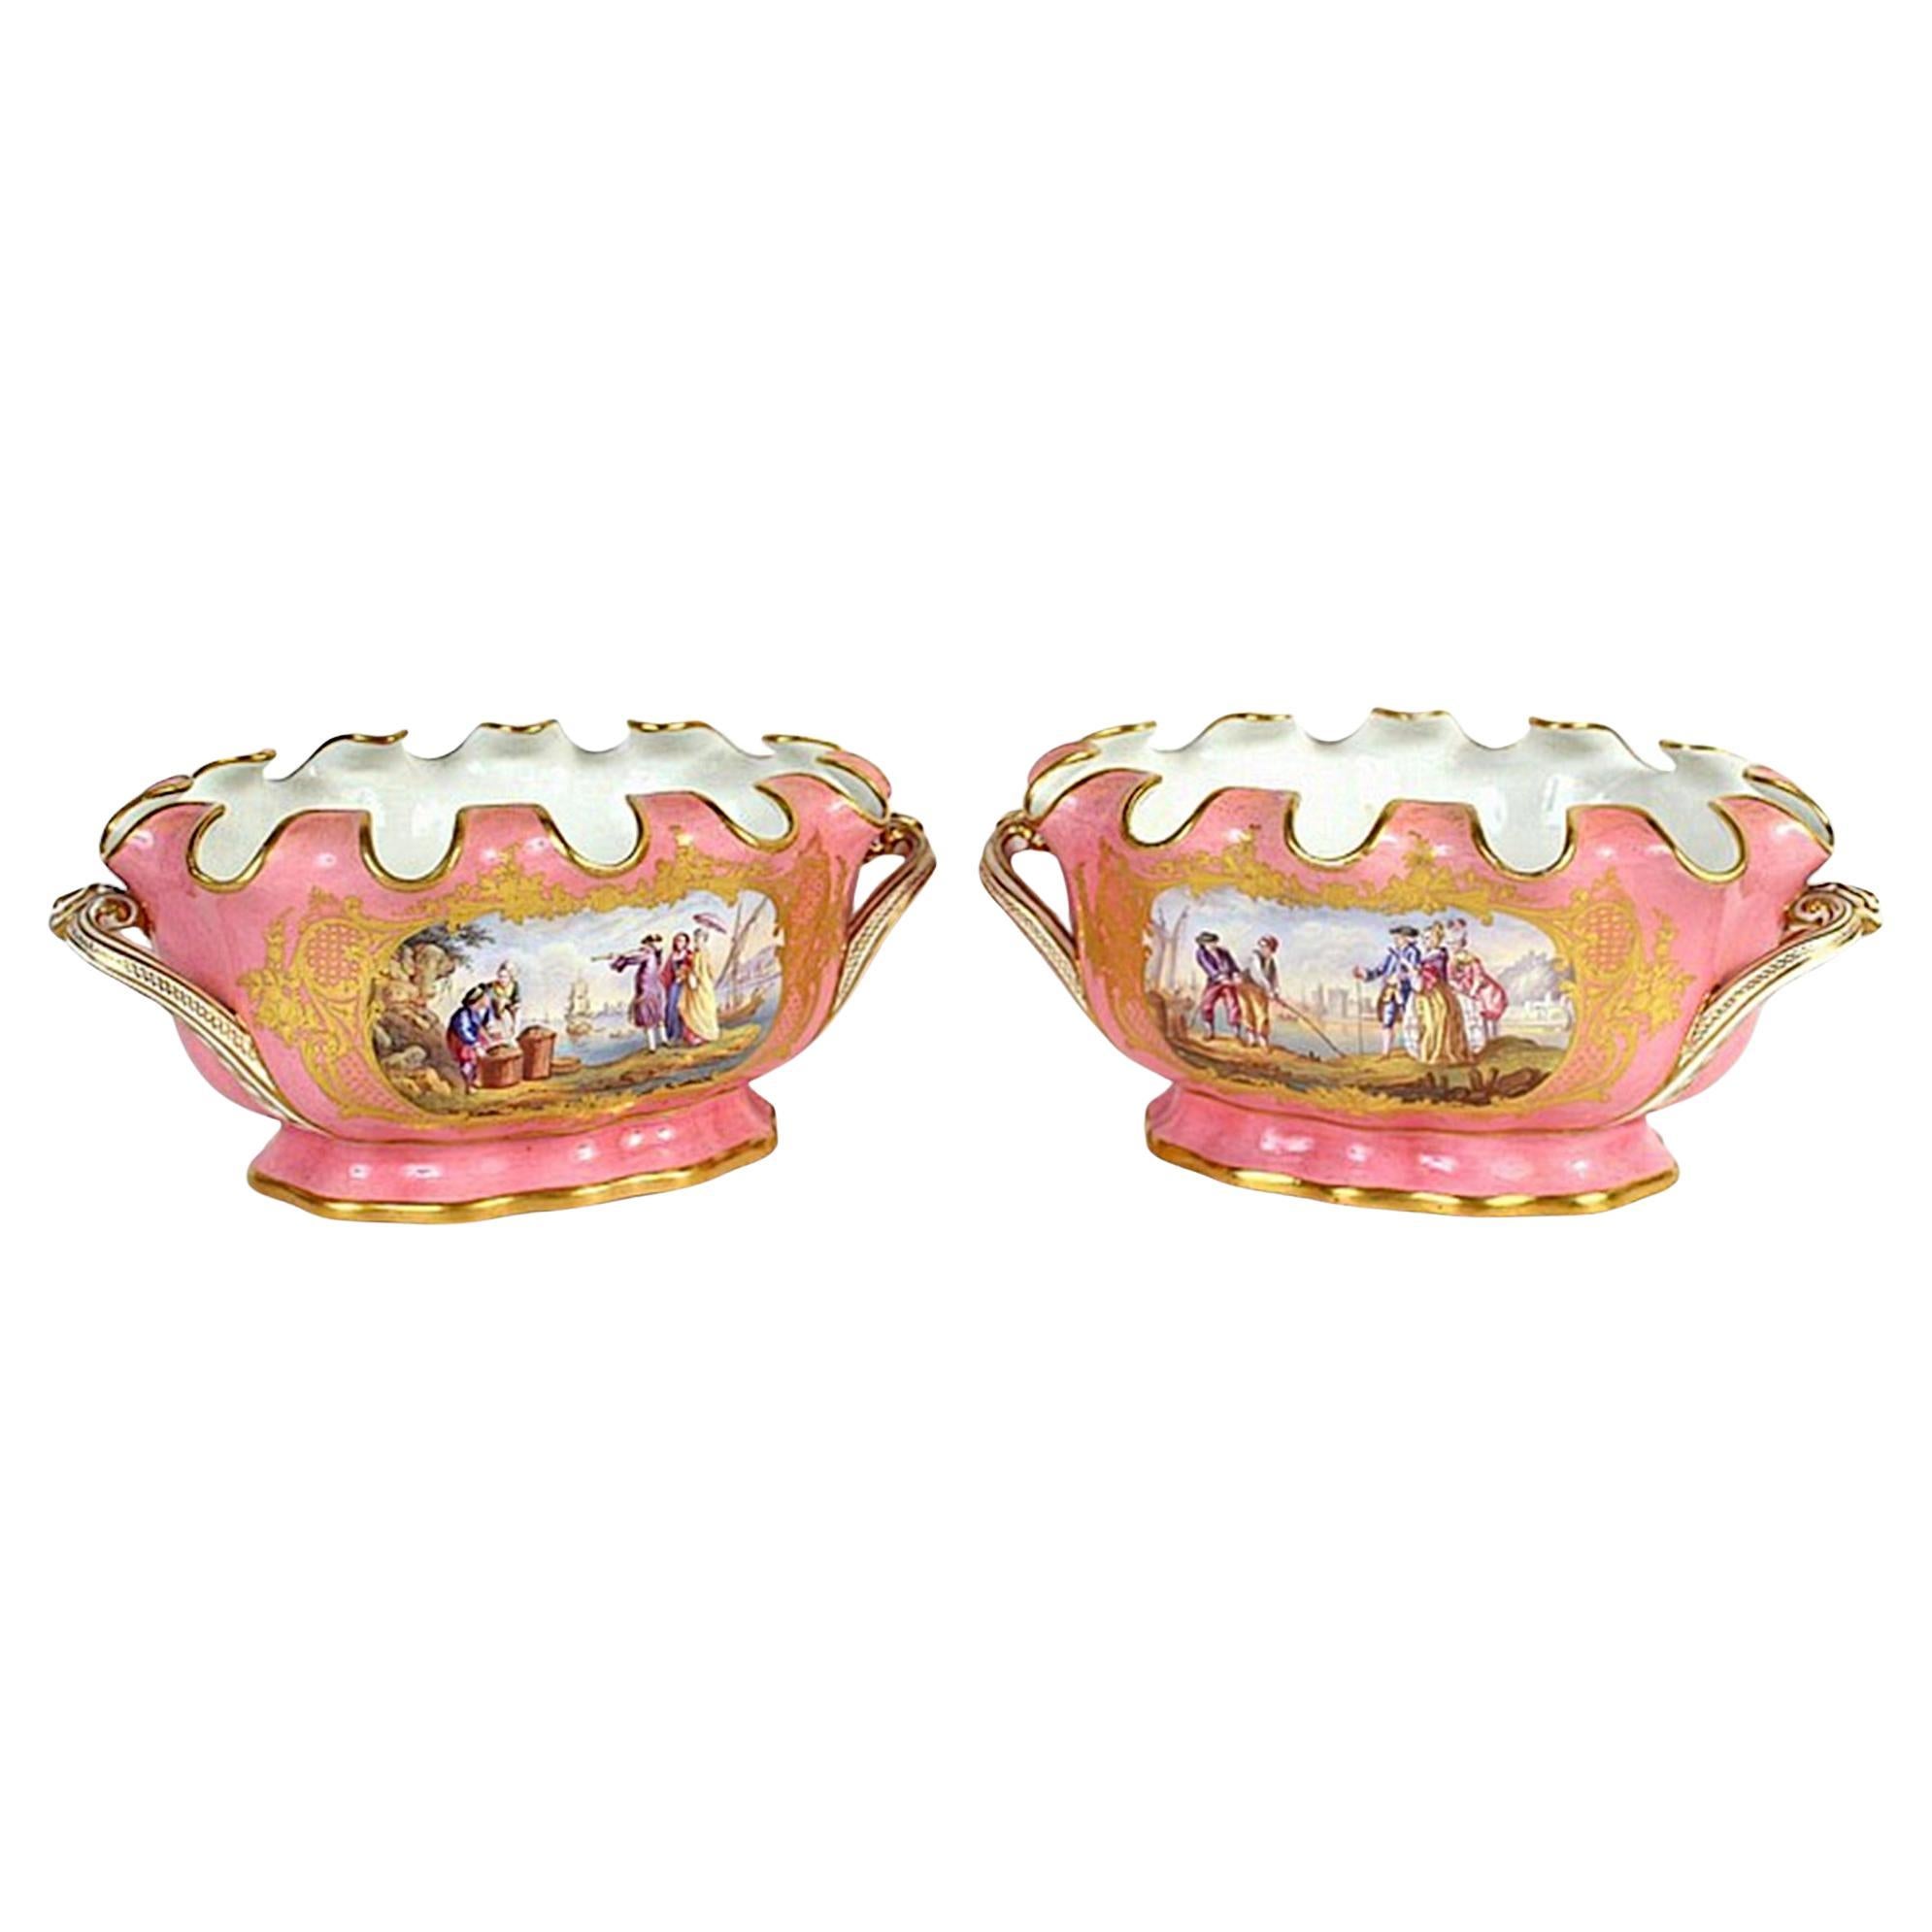  Pair Sèvres Style Gilt & Pink Painted Porcelain Cache Pots For Sale